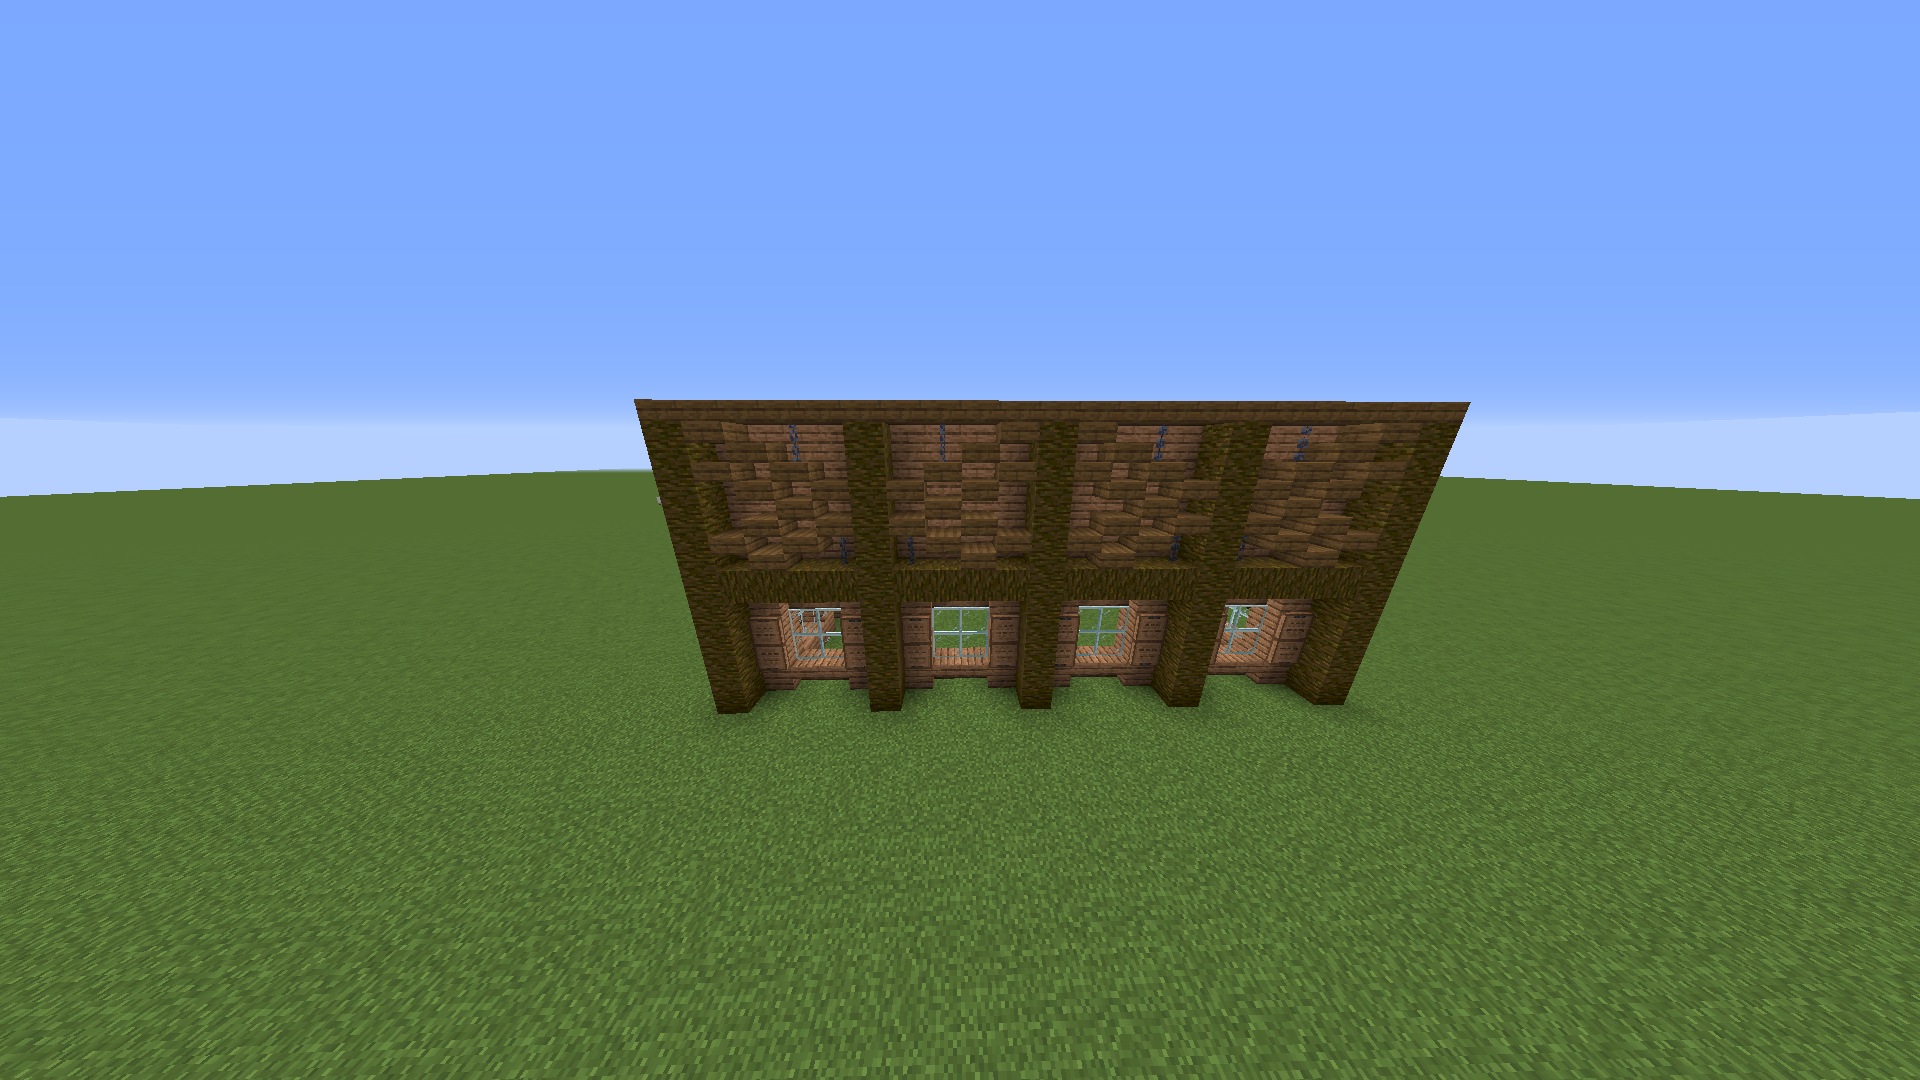 How do you like my Minecraft house - 3